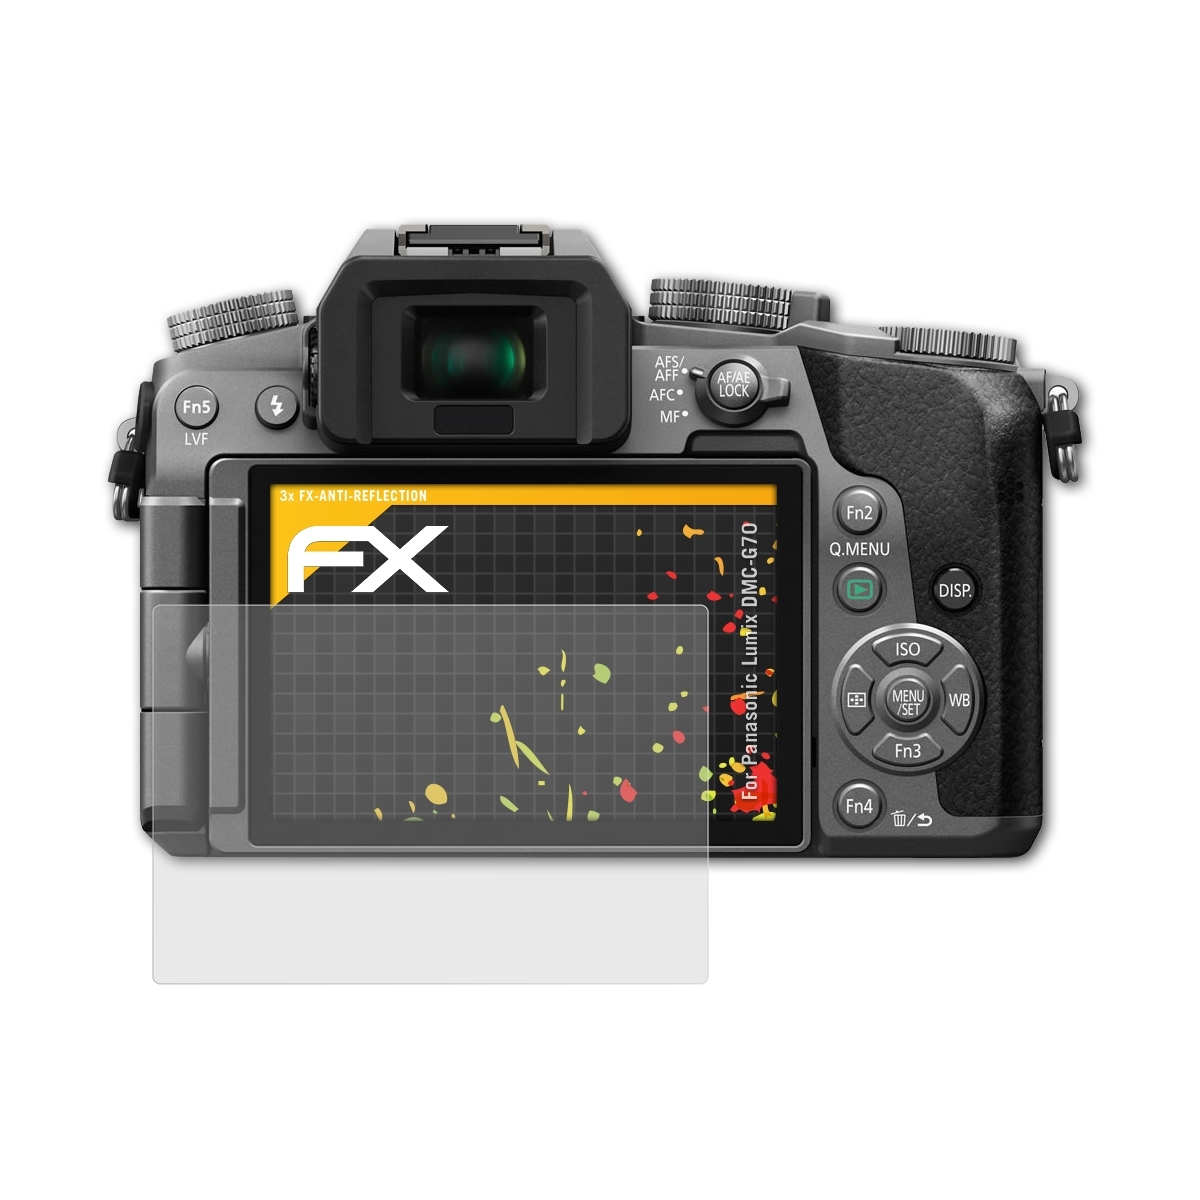 ATFOLIX 3x FX-Antireflex Displayschutz(für Panasonic DMC-G70) Lumix